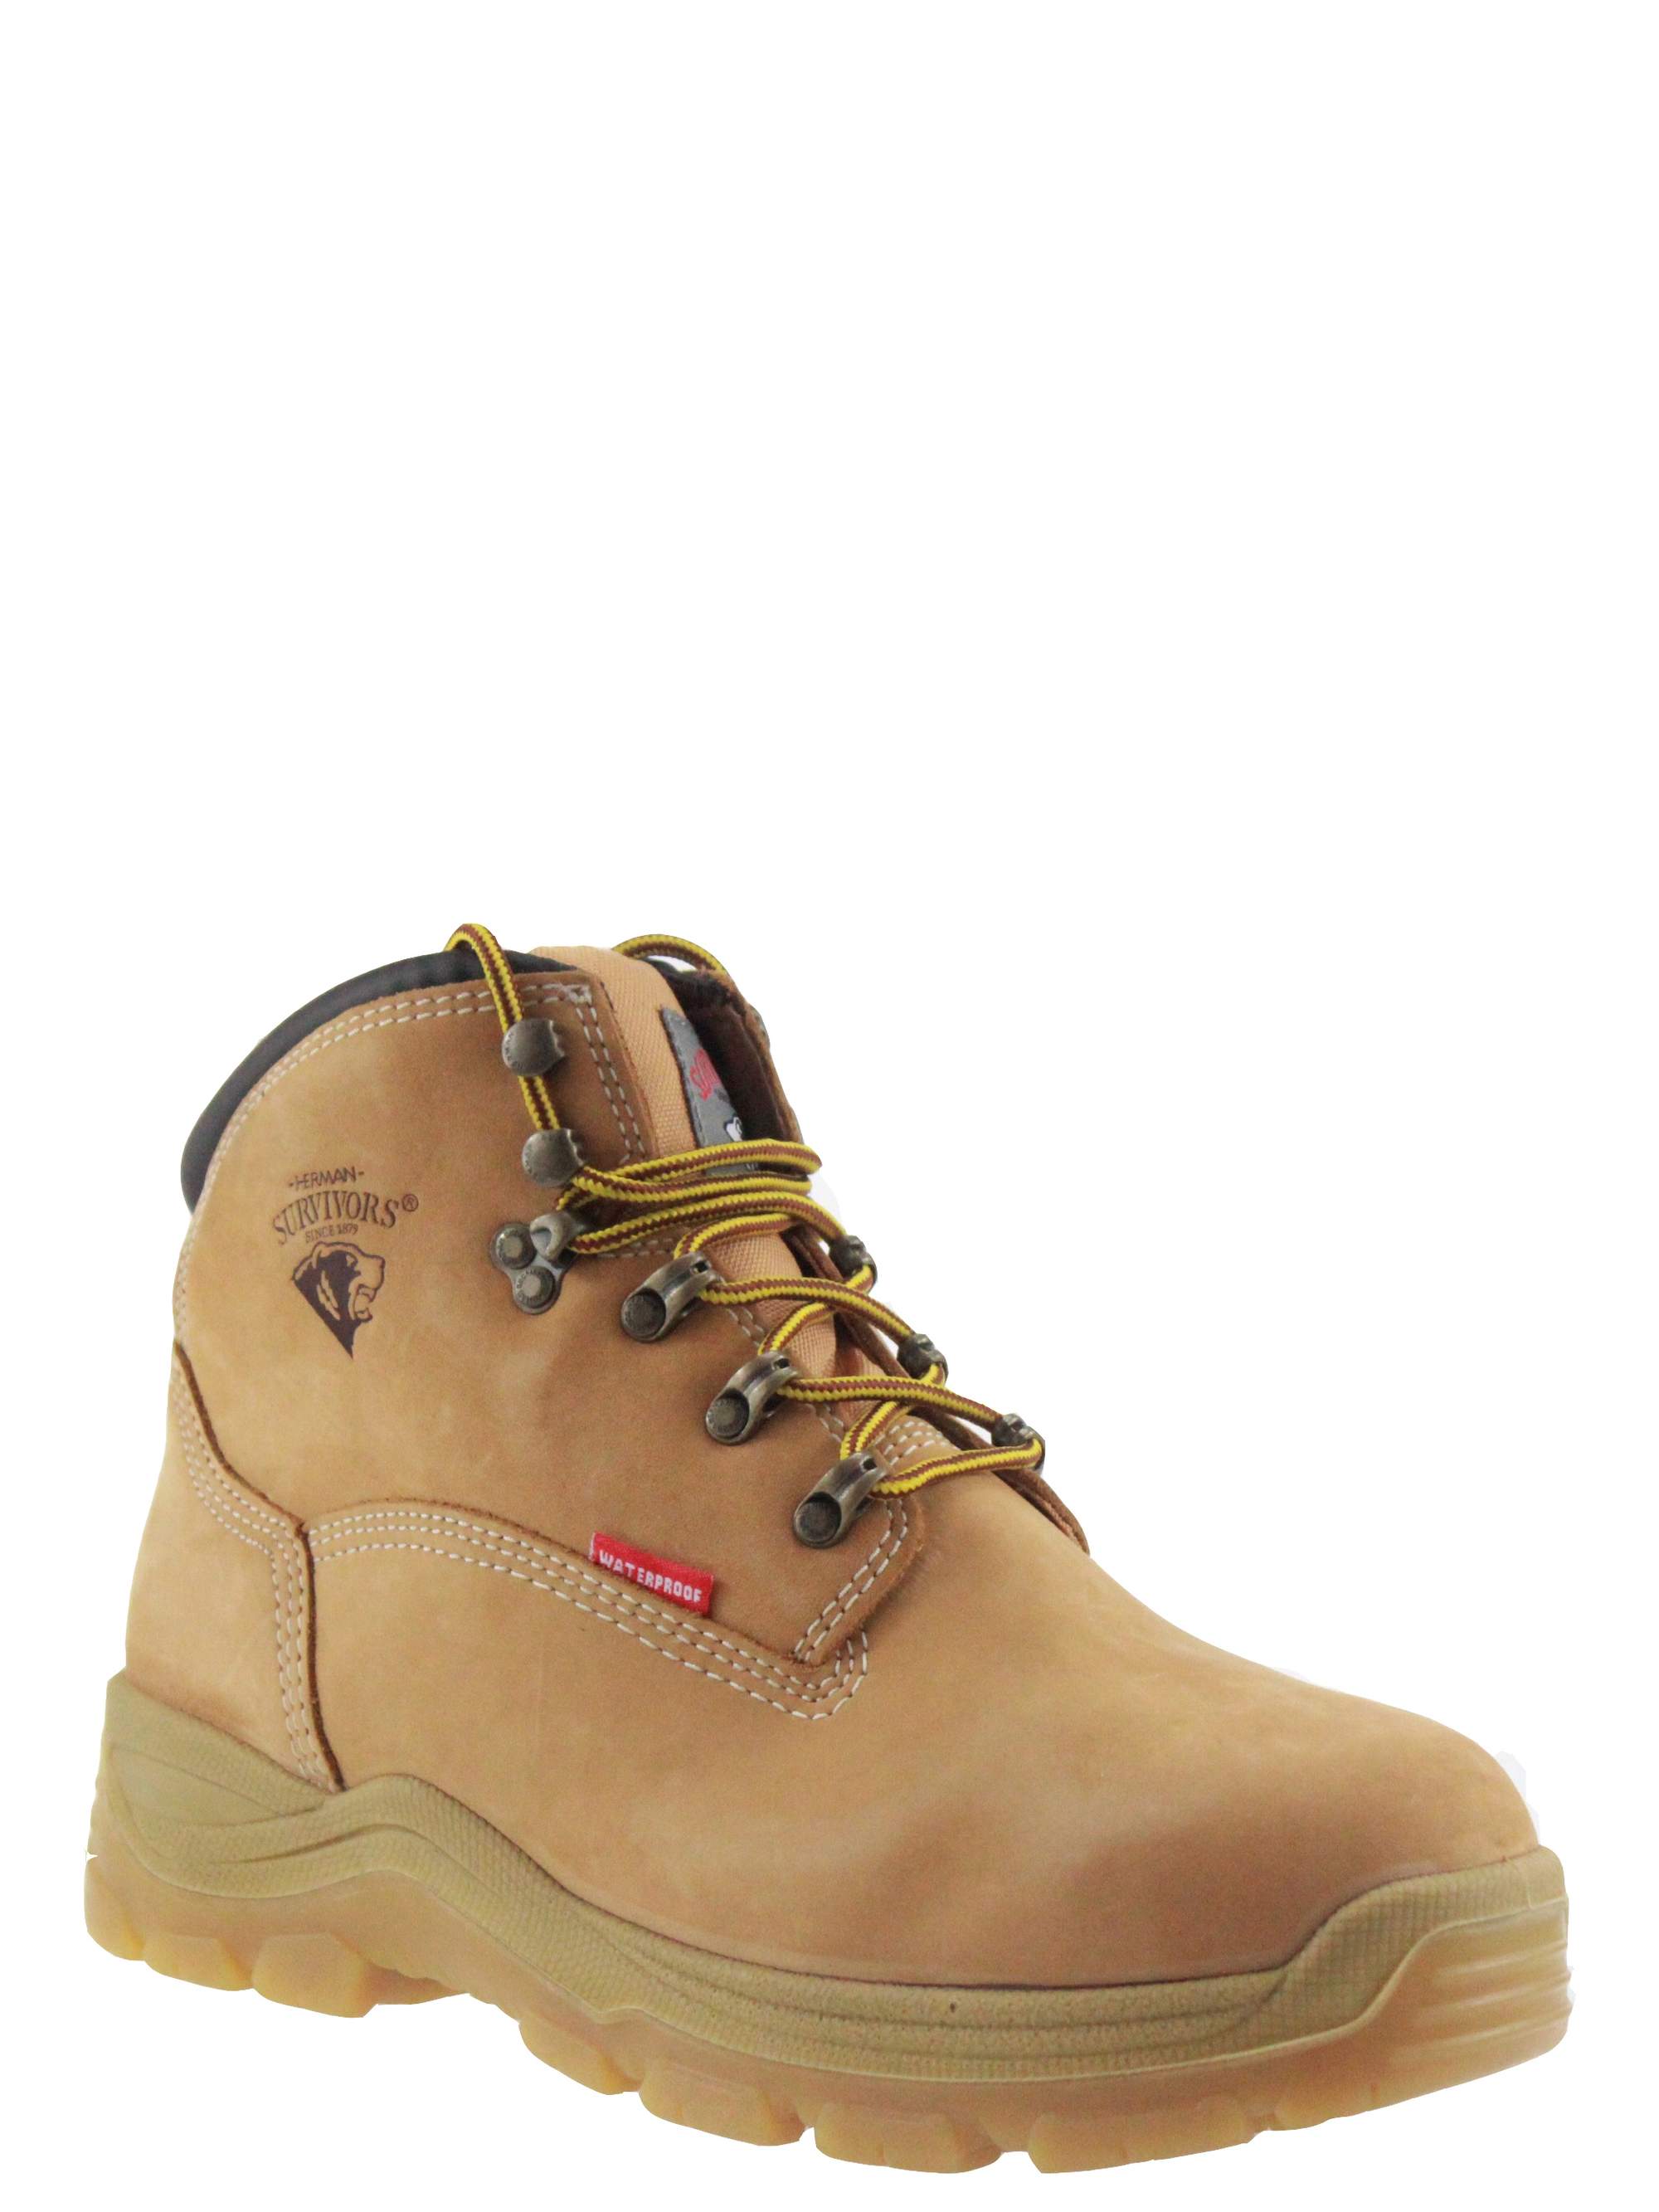 size 15 steel toe boots walmart